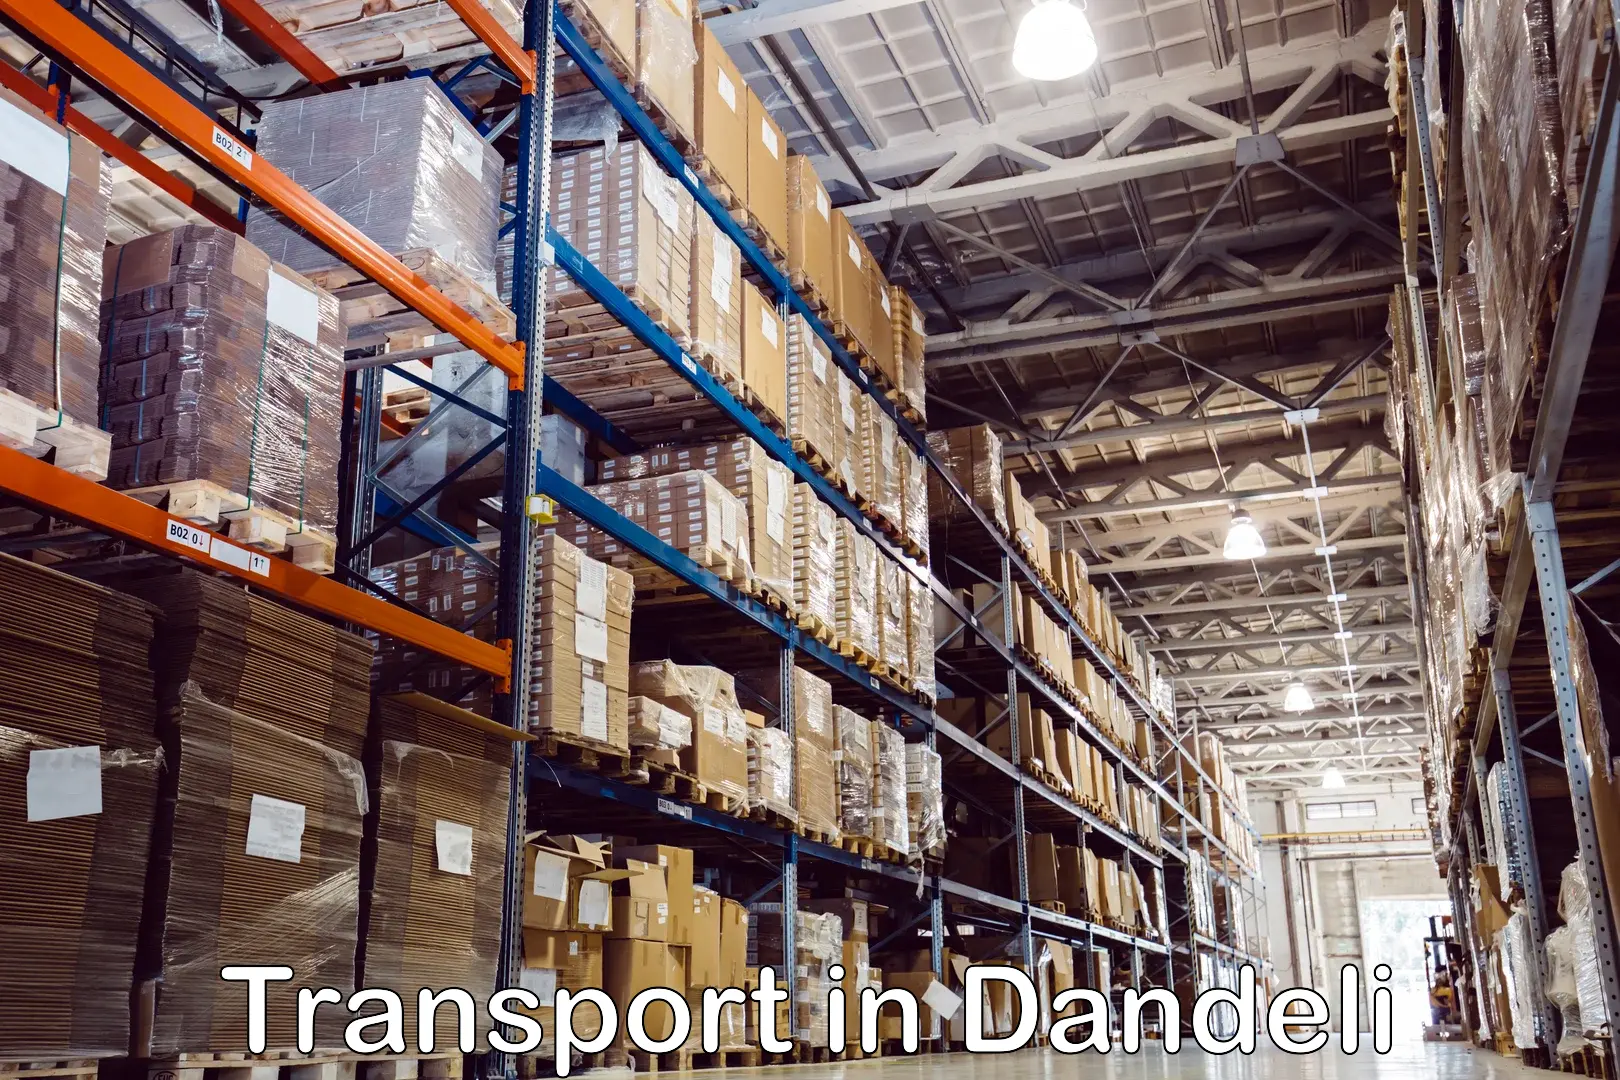 Transport in sharing in Dandeli